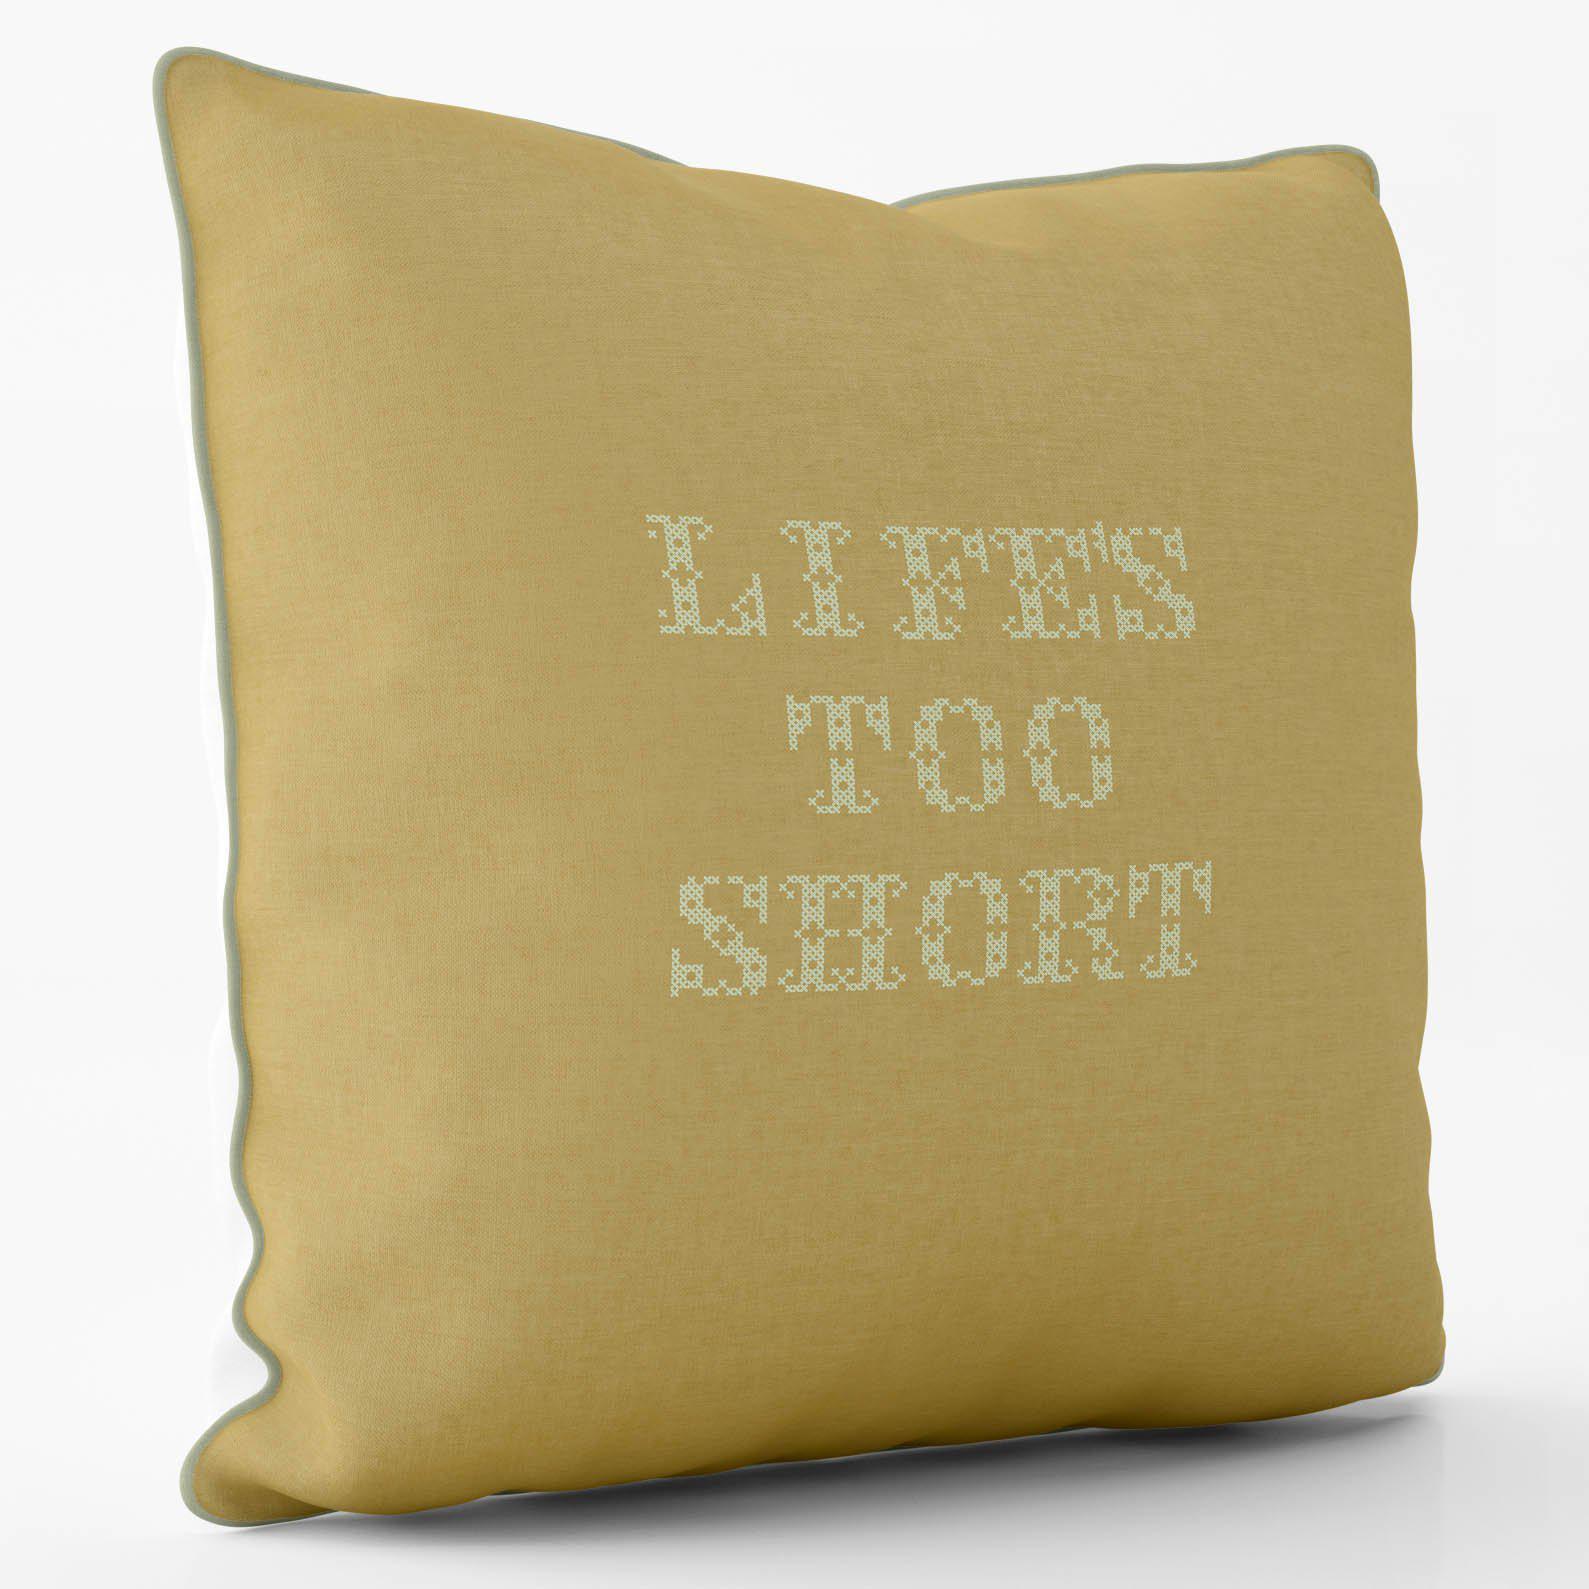 Lifes Too Short - Inspired - Graffiti Art Cushion - Handmade Cushions UK - WeLoveCushions